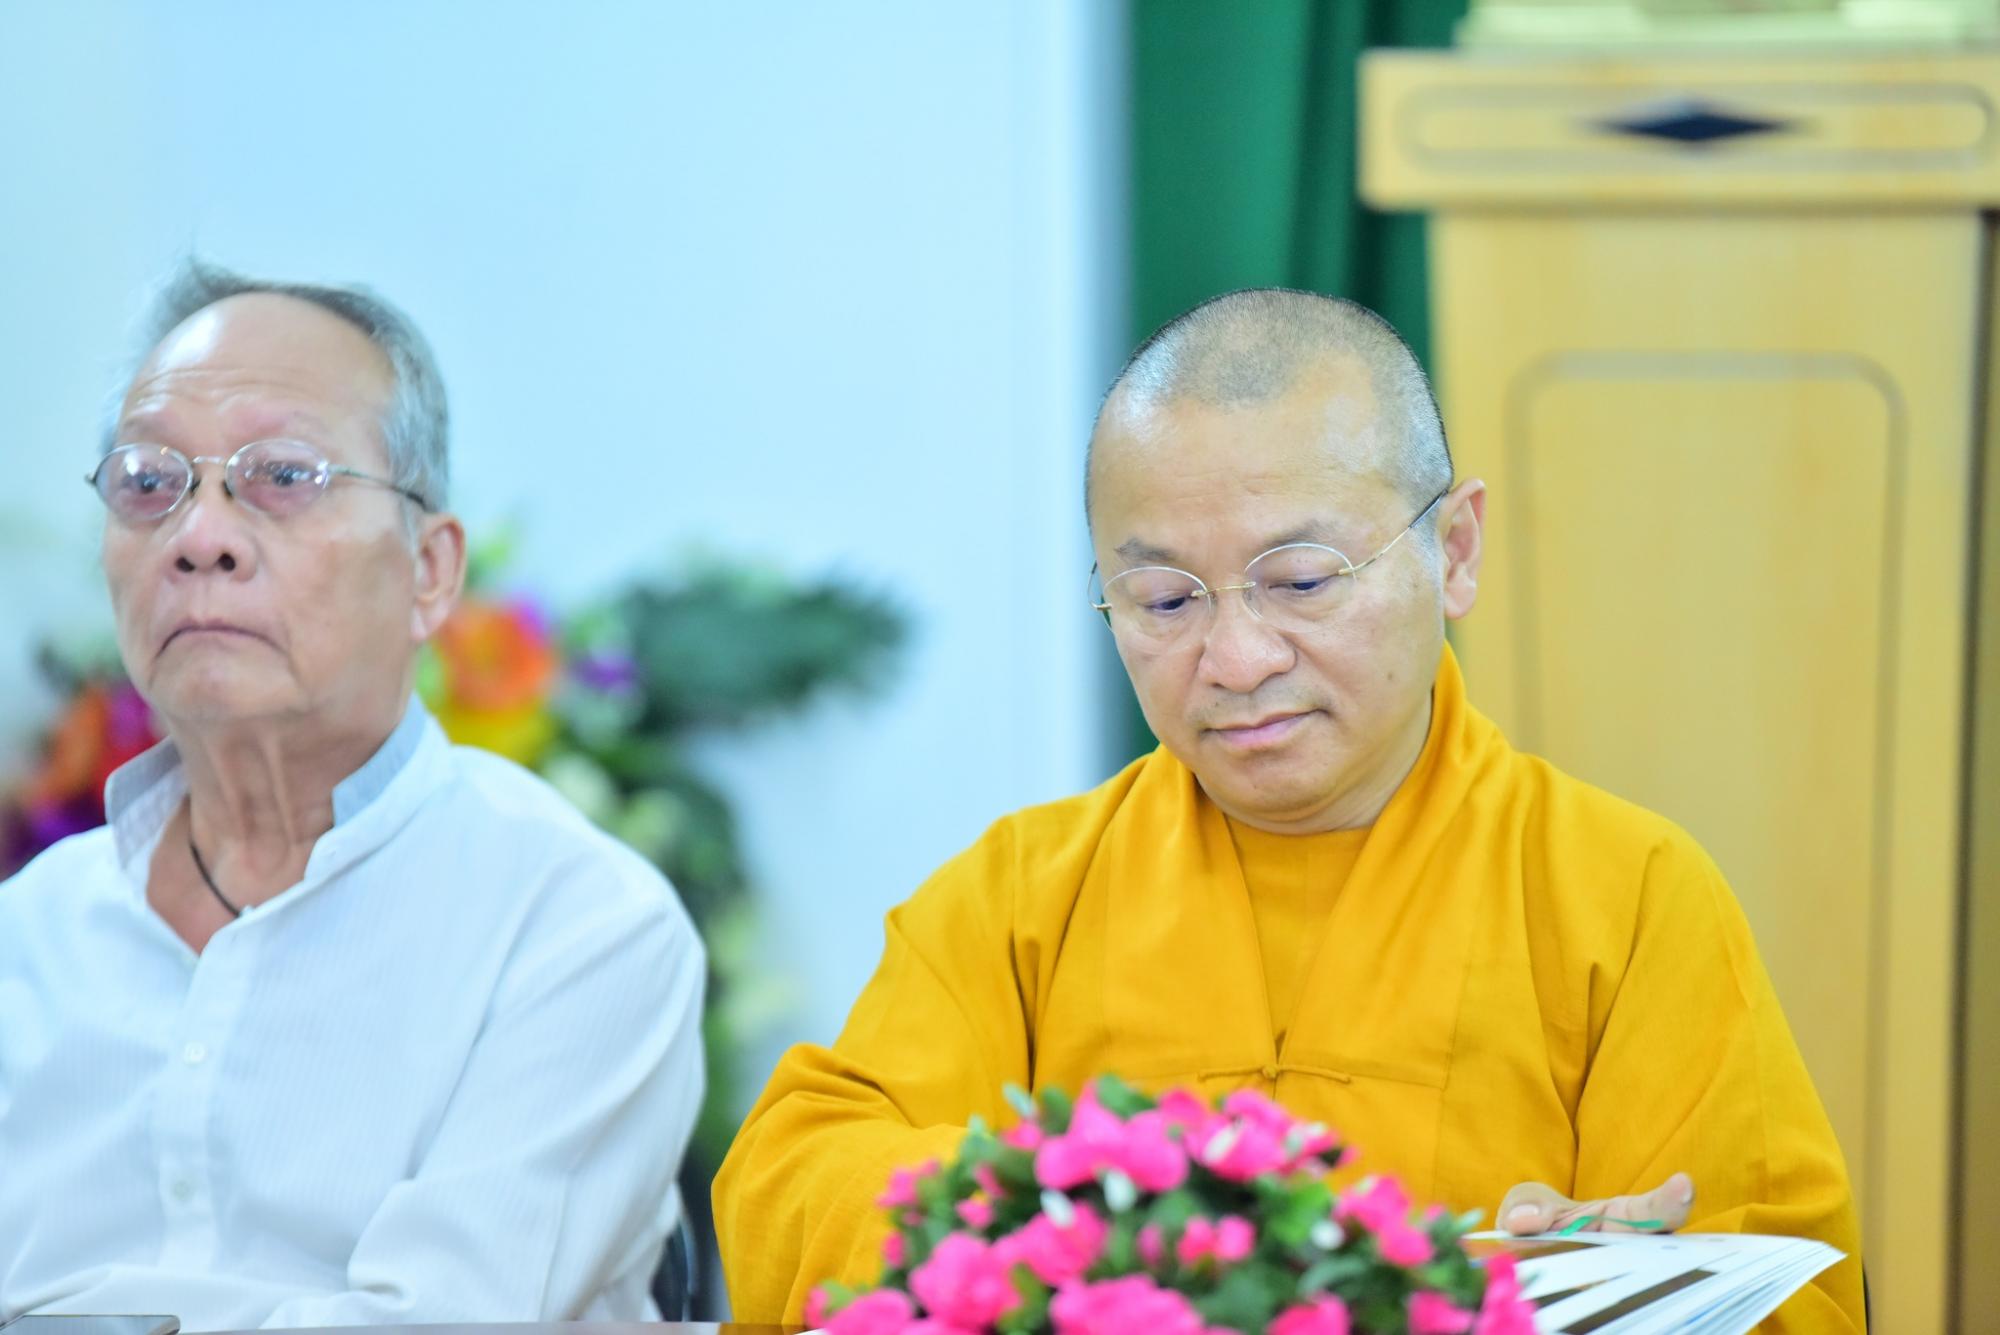 Phất động cuộc thi ảnh Phật giáo với hòa bình